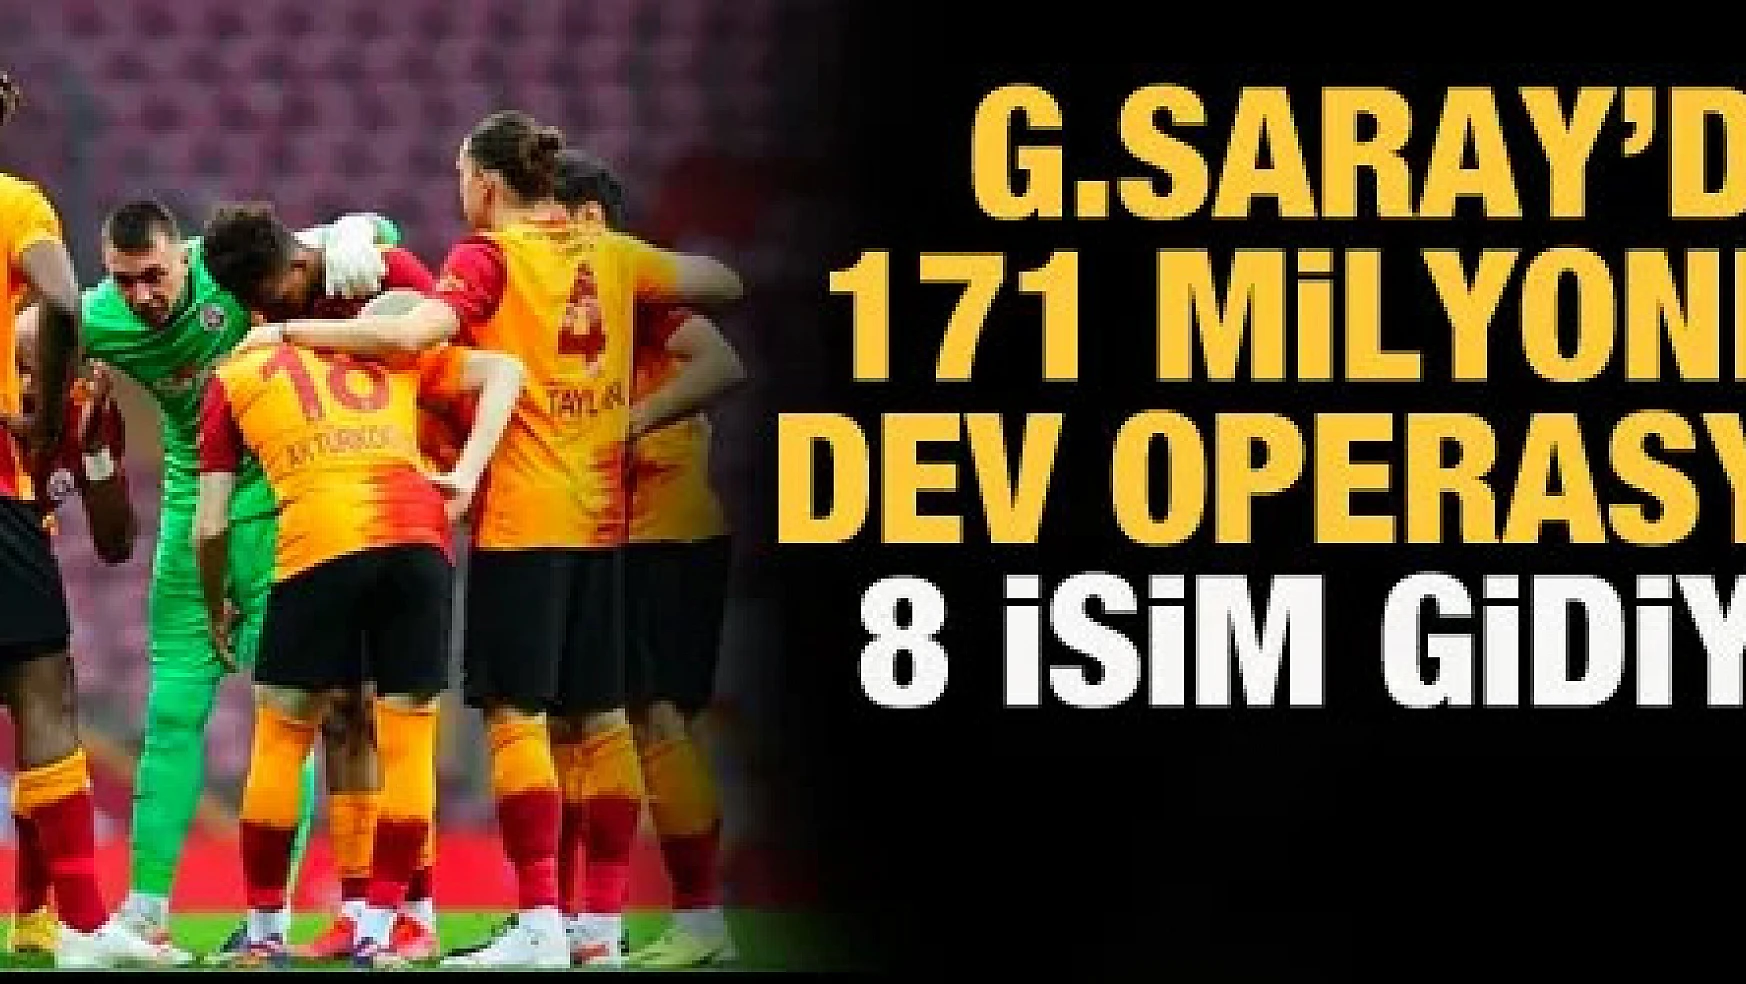 Galatasaray'da 171 milyonluk operasyon! 8 isim gidiyor...